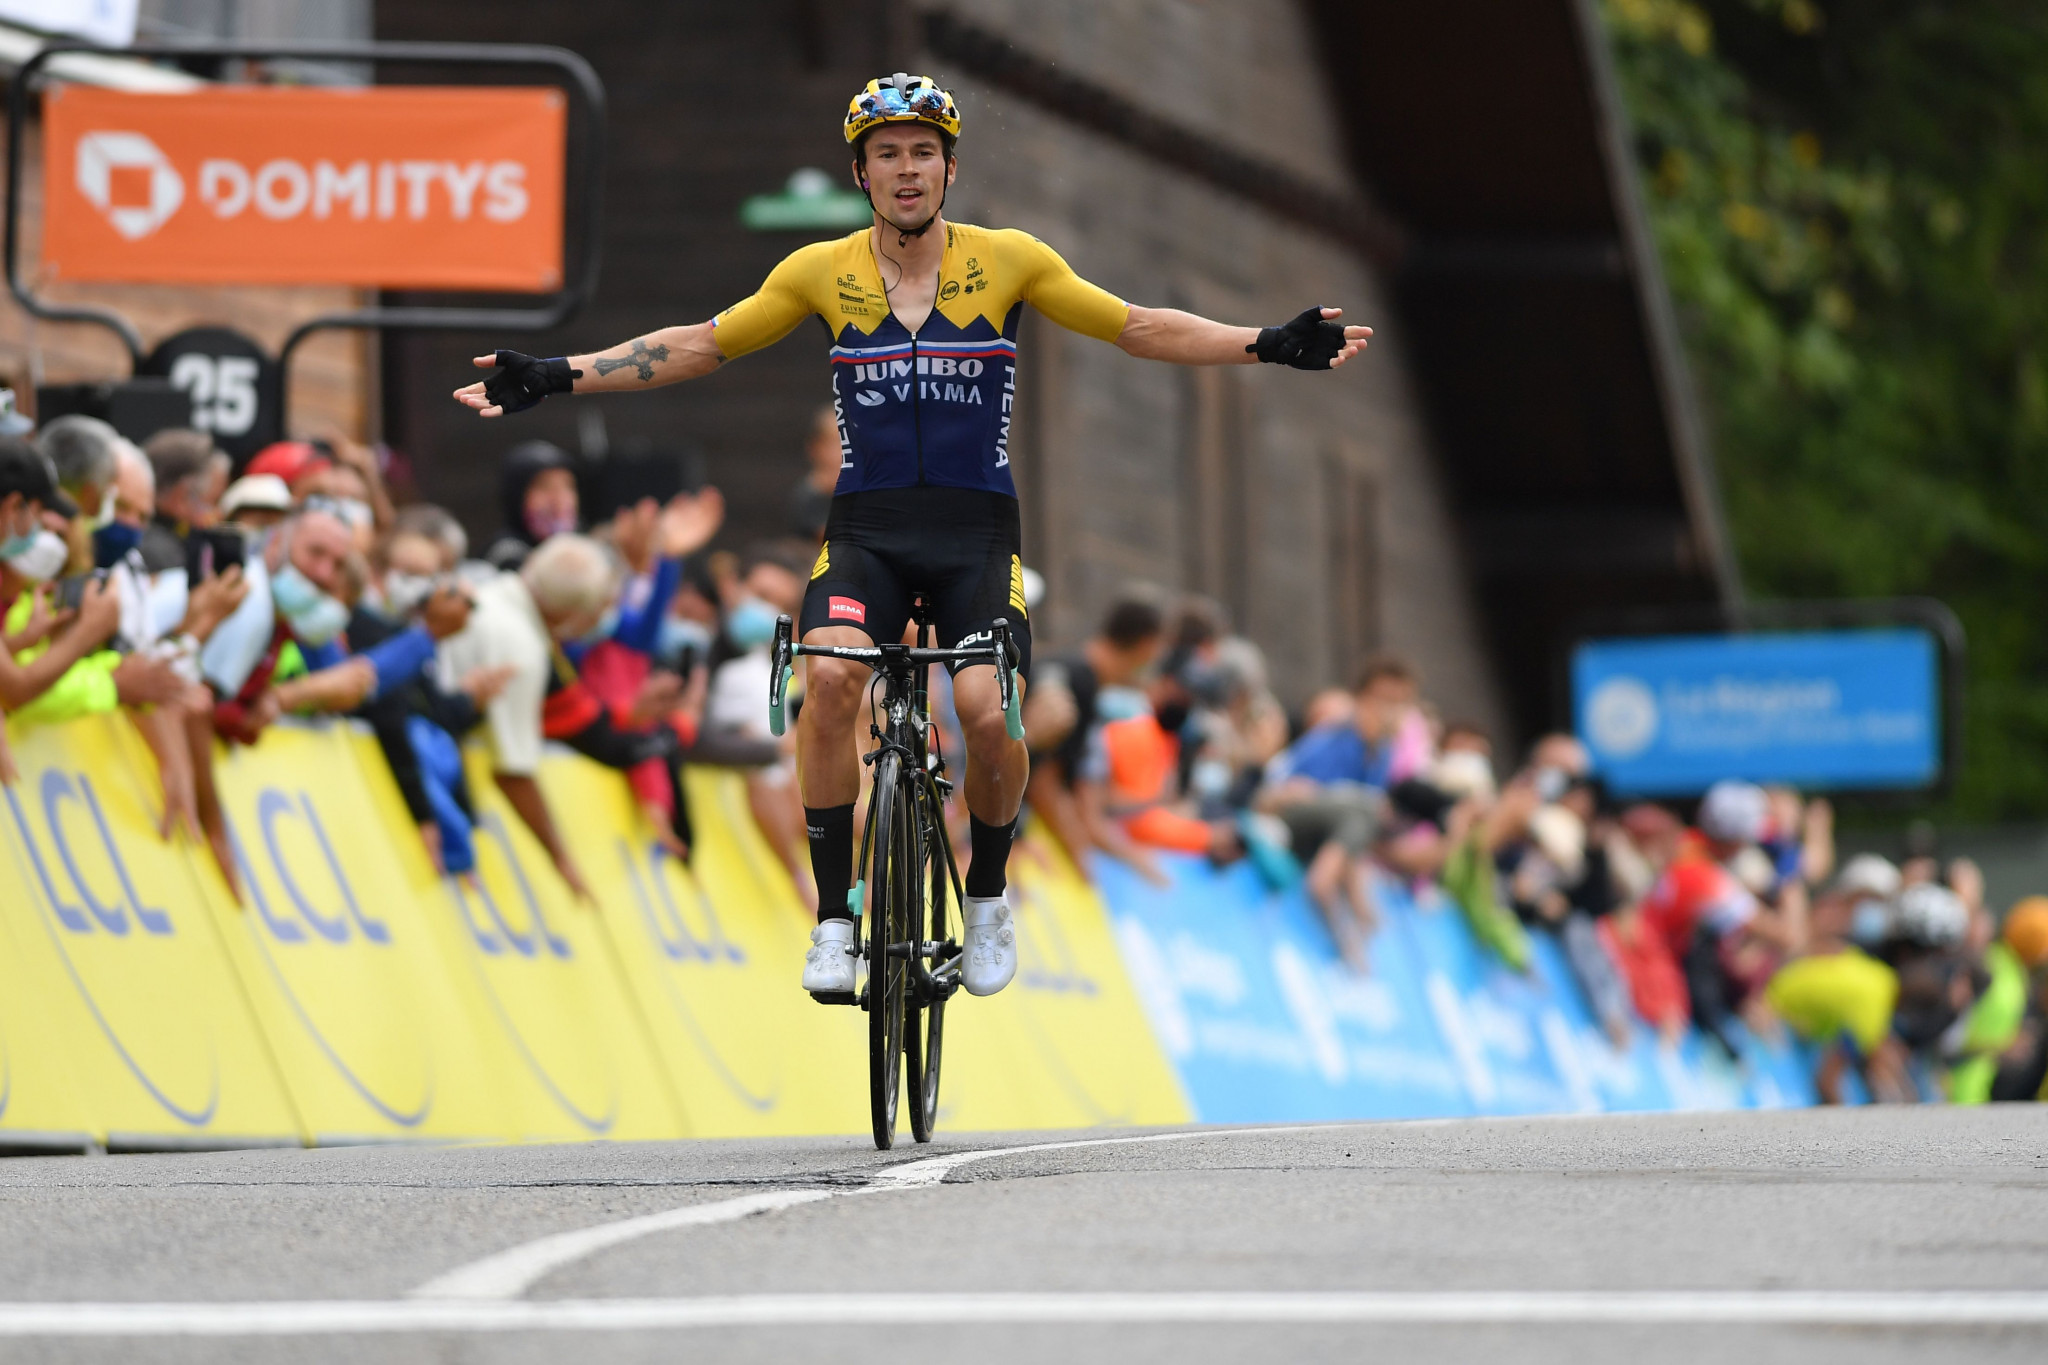 Roglič earns Critérium du Dauphiné race lead with stage two success